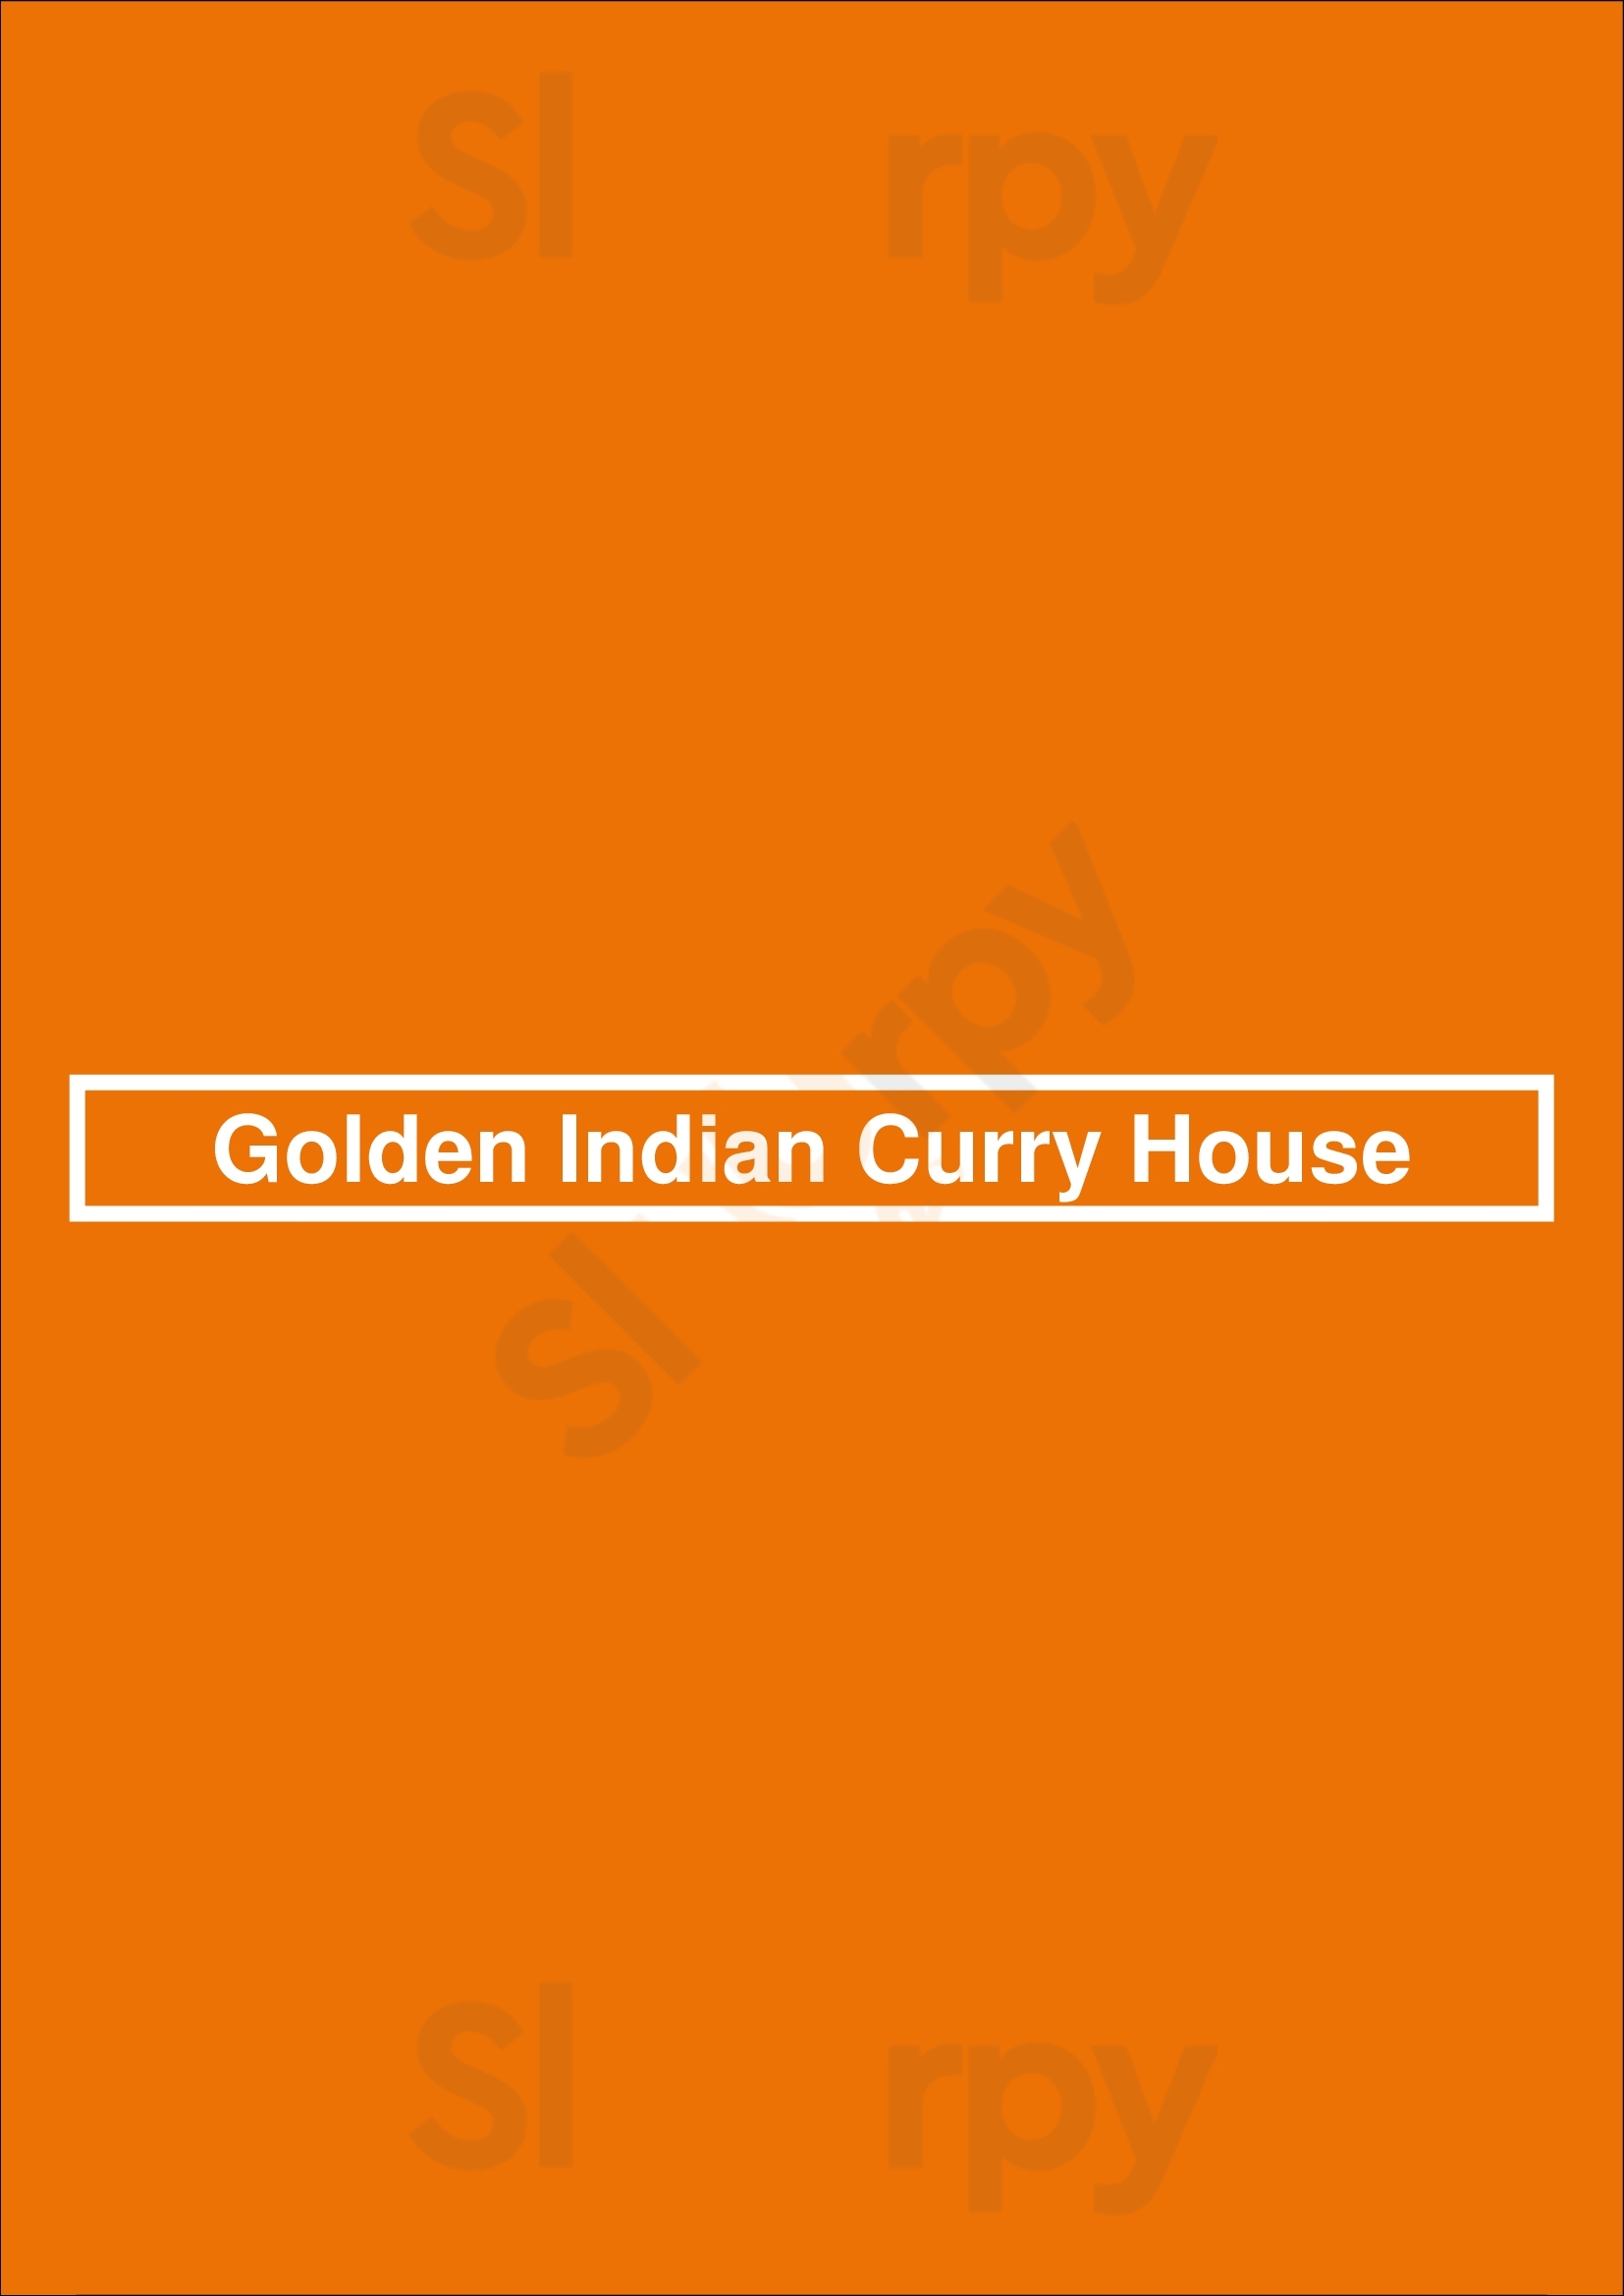 Golden Indian Curry House Kent Menu - 1